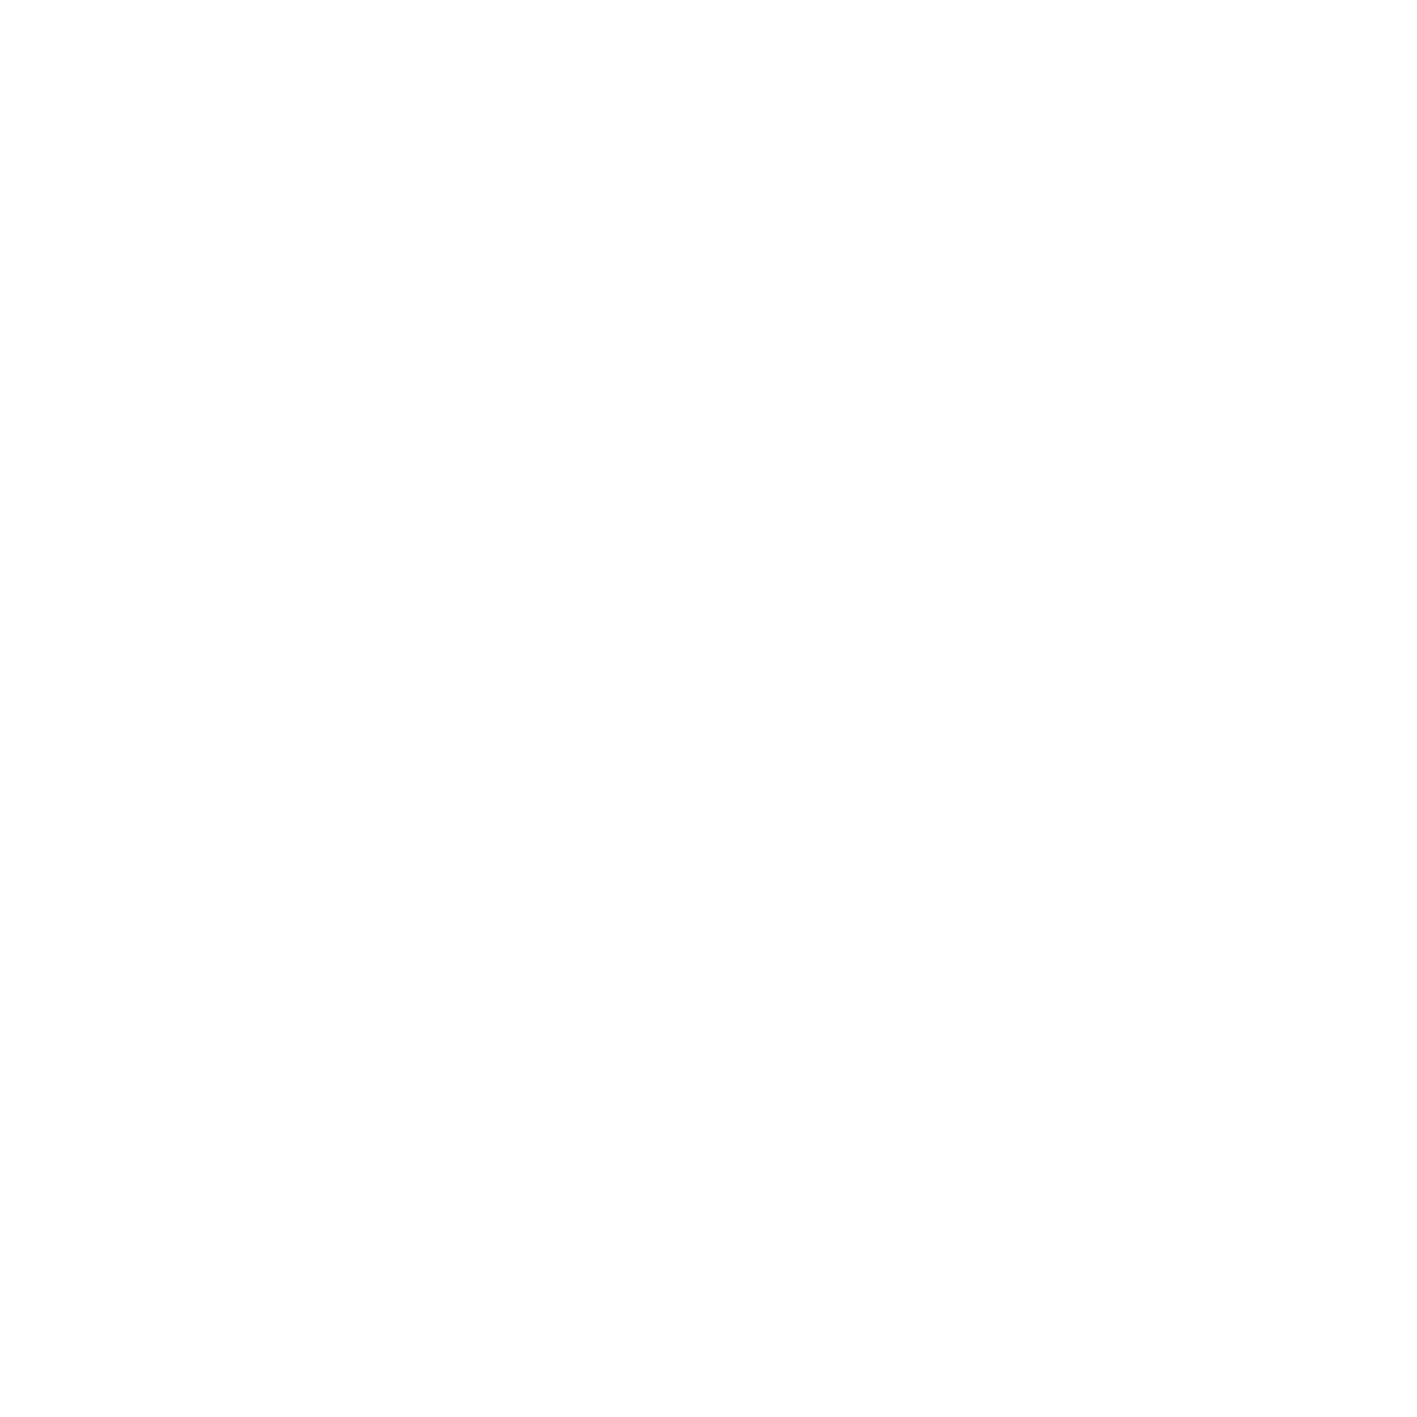 KWA ACE LOGO-01 white